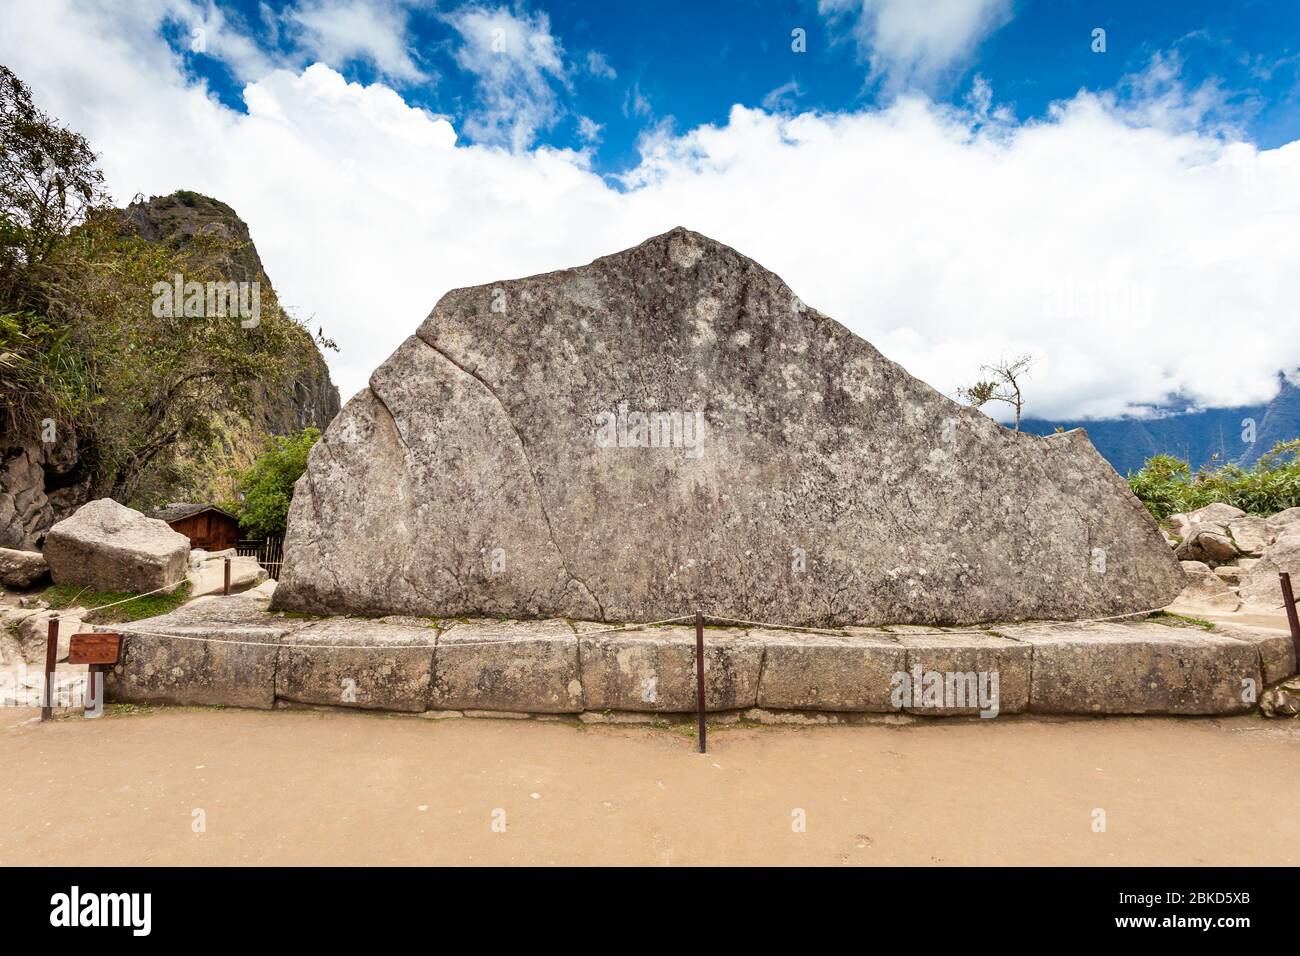 Der heilige Stein des Felsens Sagrada, Machu Picchu, Peru. Stockfoto